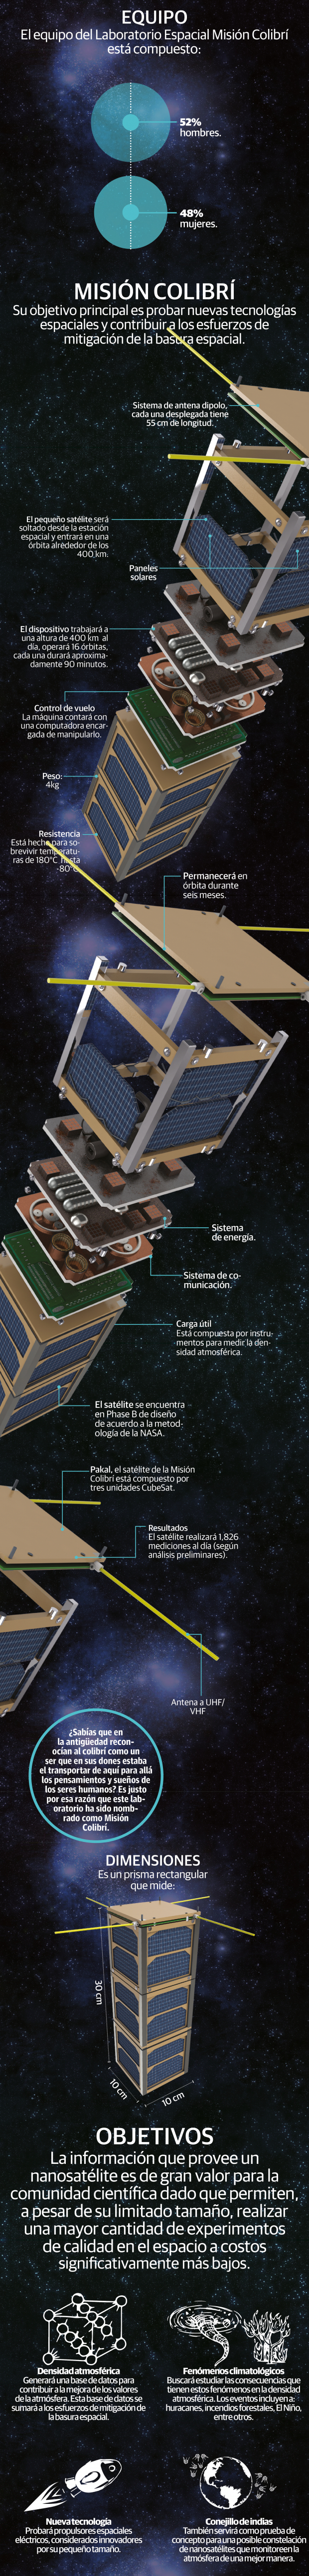 Arman nanosatélite mexicano para rastrear basura espacial